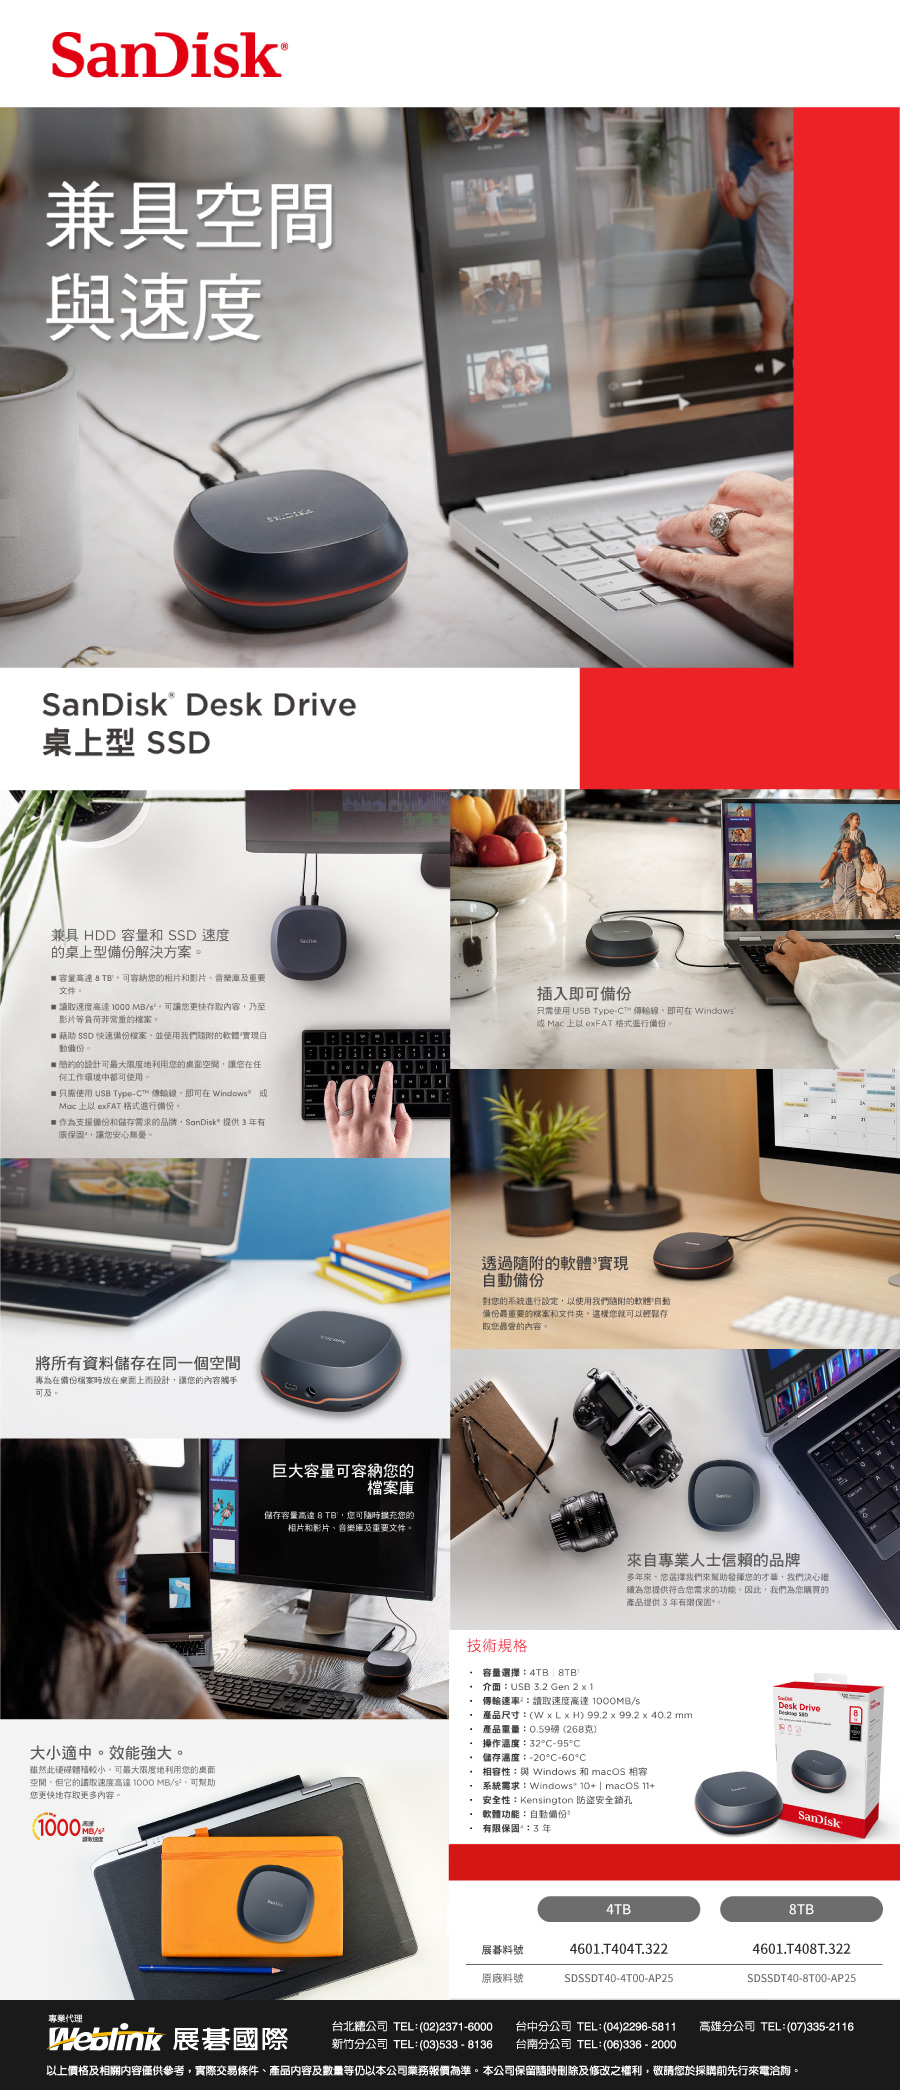 SanDisk兼具速度SanDisk Desk Drive桌型 兼具 HDD 容量  速度的桌型解決方案 容量  TB可容納的相片和影片、音樂及重要文件 讀取速度高達  MB可讓您更快存取內容乃至影片等負荷非常重的檔案 藉助 SSD 快速備份檔案並使用我們的軟體實現動備份。 簡約的設計可最大度地利用您的空間讓您在任工作環境使用。只需使用 USB Type™ 線即可在indows Mac  eFAT 格式進行備份。作為支援備份和儲存需求的品牌SanDisk提供有限保固讓您安心無憂插入即可備份只需使用 USB Type-C™ 傳輸線即可在 Windows Mac 上 eFAT 格式進行備份將所有資料儲存在同一個空間專為在備份檔案時放在桌面上而設計讓您的內容觸手可及。大小適中。效能強大。雖然此硬碟體積較小可最大限度地利用您的桌面空間它的取速度高達1000 MB/,可幫助您更快地存取更多內容,(1000/巨大容量可容納您的檔案儲存容量高達 8 TB,您可隨時擴充您的相片和影片、音樂庫及重要文件。透過隨附的軟體實現備份對您的系統進行,以使用我們隨附的軟體備份最重要的檔案和文件,您就可以輕鬆存取您最愛的內容。來自專業人士信賴的品牌多年來,您選擇我們來幫助發揮您的才華,我們決心為您提供符合您需求的功能。因此,我們為您購買的產品提供3年有限保固技術規格 容量選擇4TB | 8TB 介面:USB 3.2 Gen 2  1 傳輸速率:讀取速度高達 /s 產品尺寸:(W x  H) 99.2 x 99.2 x 40.2 mm產品重量:0.59磅(268克)Desk Drive操作溫度:32C-95°C* 儲存溫度:-20°C-60°C* 相容性:與 Windows 和 macOS 相容系統需求:Windows 10+ | macOS 11+ 安全性:Kensington 防盜安全鎖孔- 軟體功能:自動備份 有限保固:3年SanDisk4TB展料號原廠料號4601T404T.322SDSSDT40-4T00-AP258TB4601.T408T.322SDSSDT40-8T00-AP25專業代理Weblink 展碁國際台北總公司 TEL:(02)2371-6000 台中分公司 TEL:(04)2296-5811 高雄分公司 TEL:(07)335-2116新竹分公司 TEL:(03)533-8136 台南分公司 TEL:(06)336-2000以上價格及相關內容僅供參考,實際交易條件、產品內容及數量等仍以本公司業務報價為準。本公司保留隨時刪除及修改之權利,敬請您於採購先行來電洽詢。